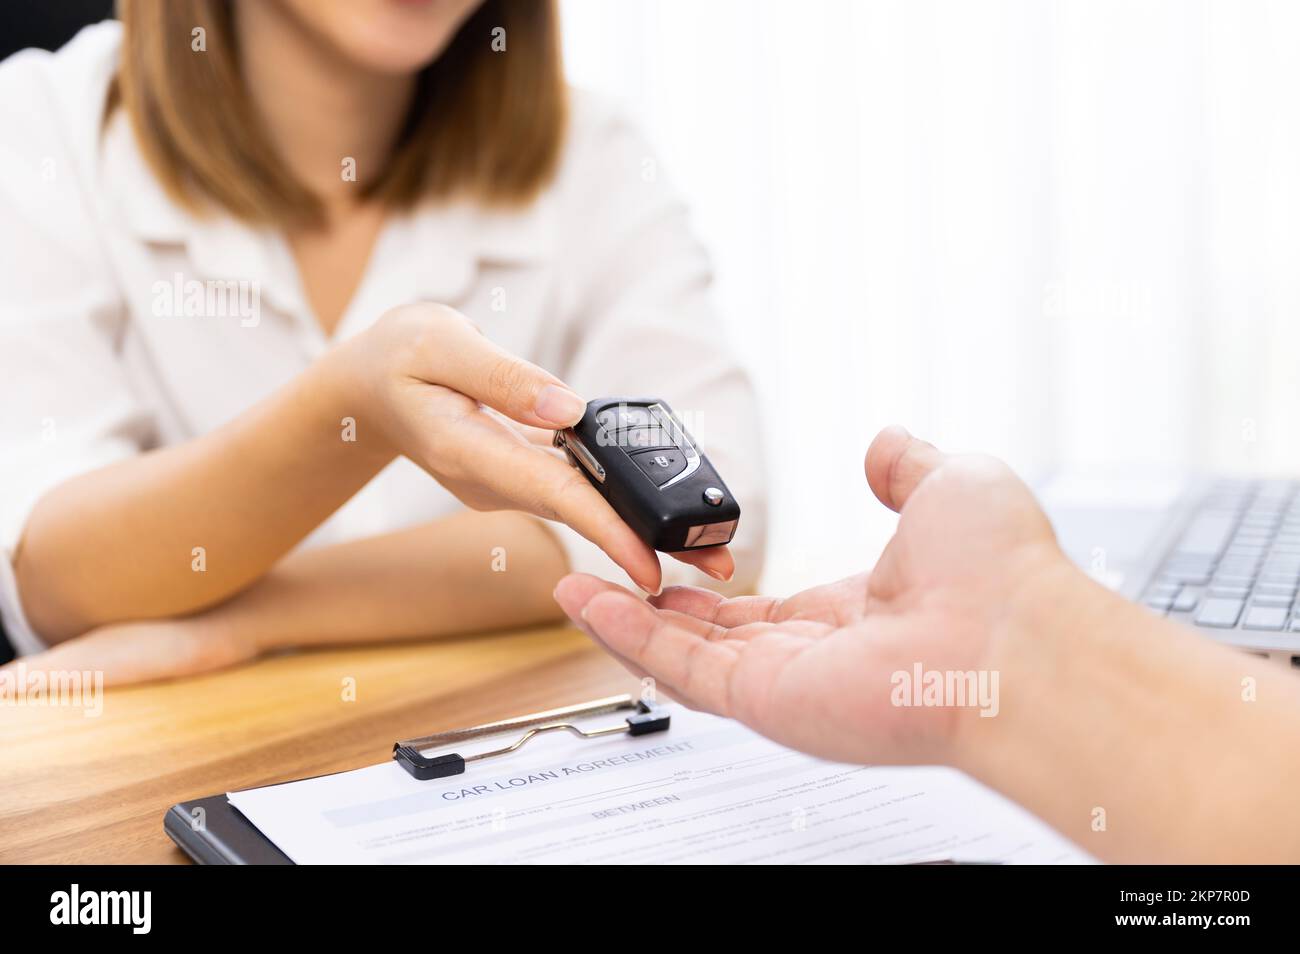 La main d'une femme signe un contrat de prêt de voiture Banque D'Images